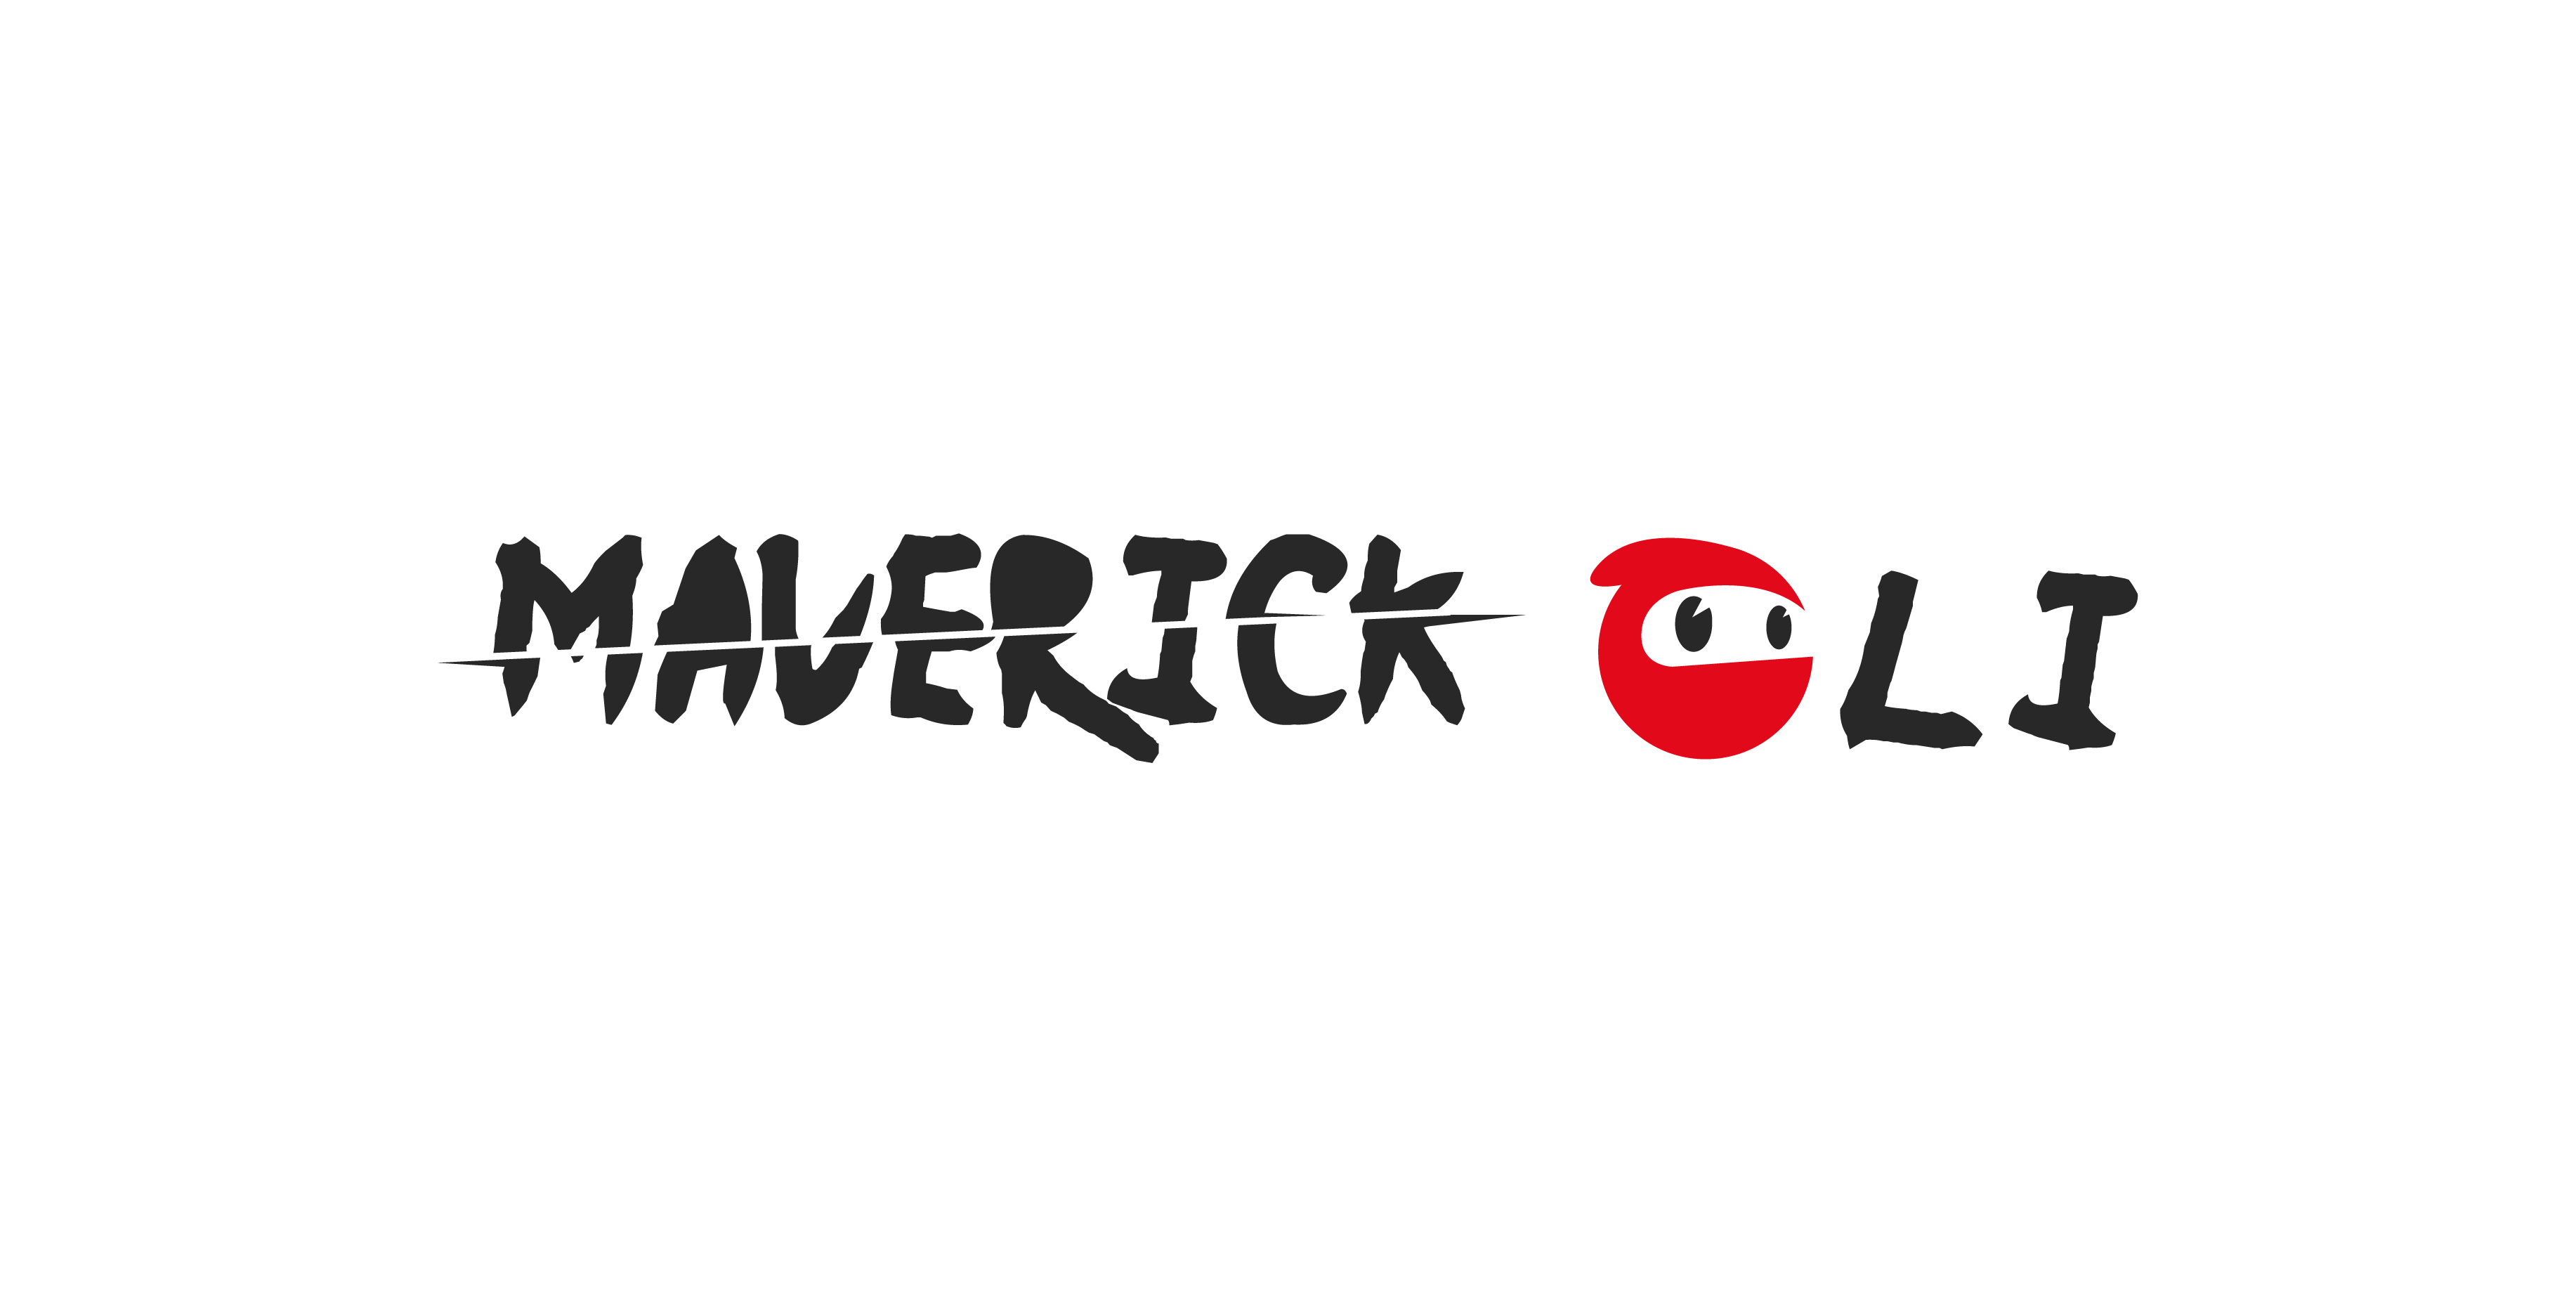 Maverick CLI Logo